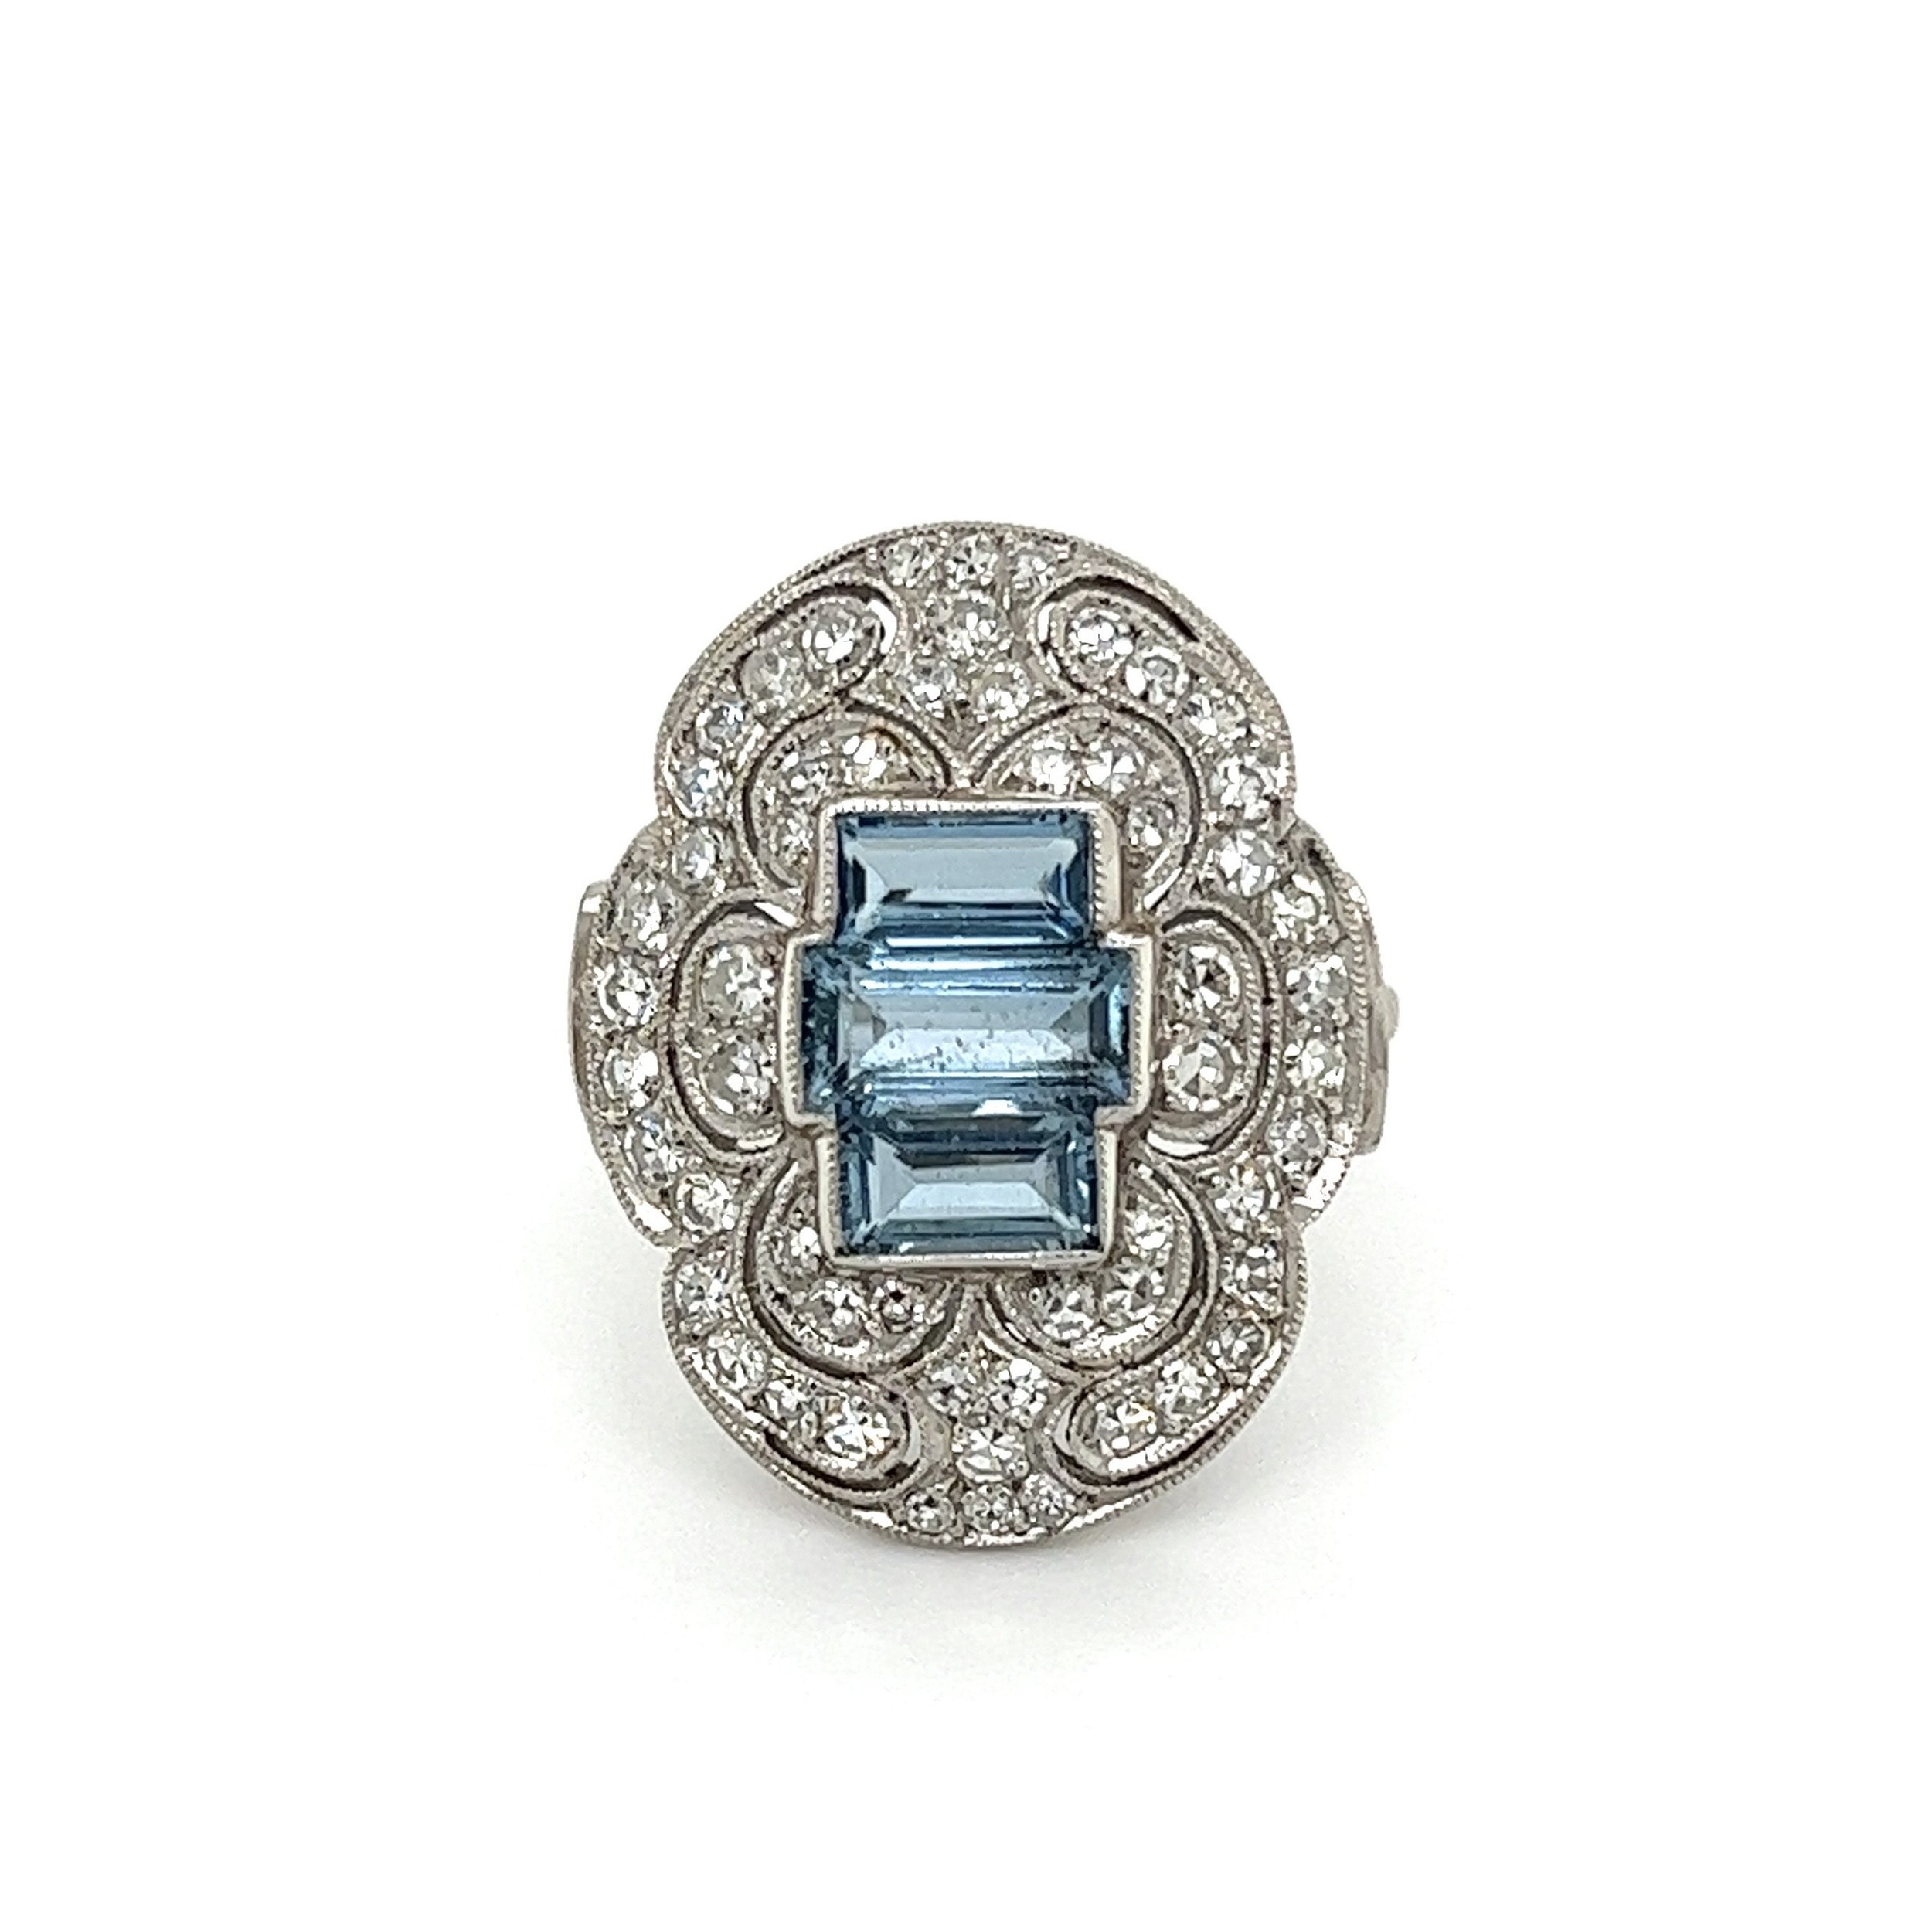 Platinum 1.45tcw Aquamarine & 1.18tcw OEC Diamond Ring 7.5g, s7.25